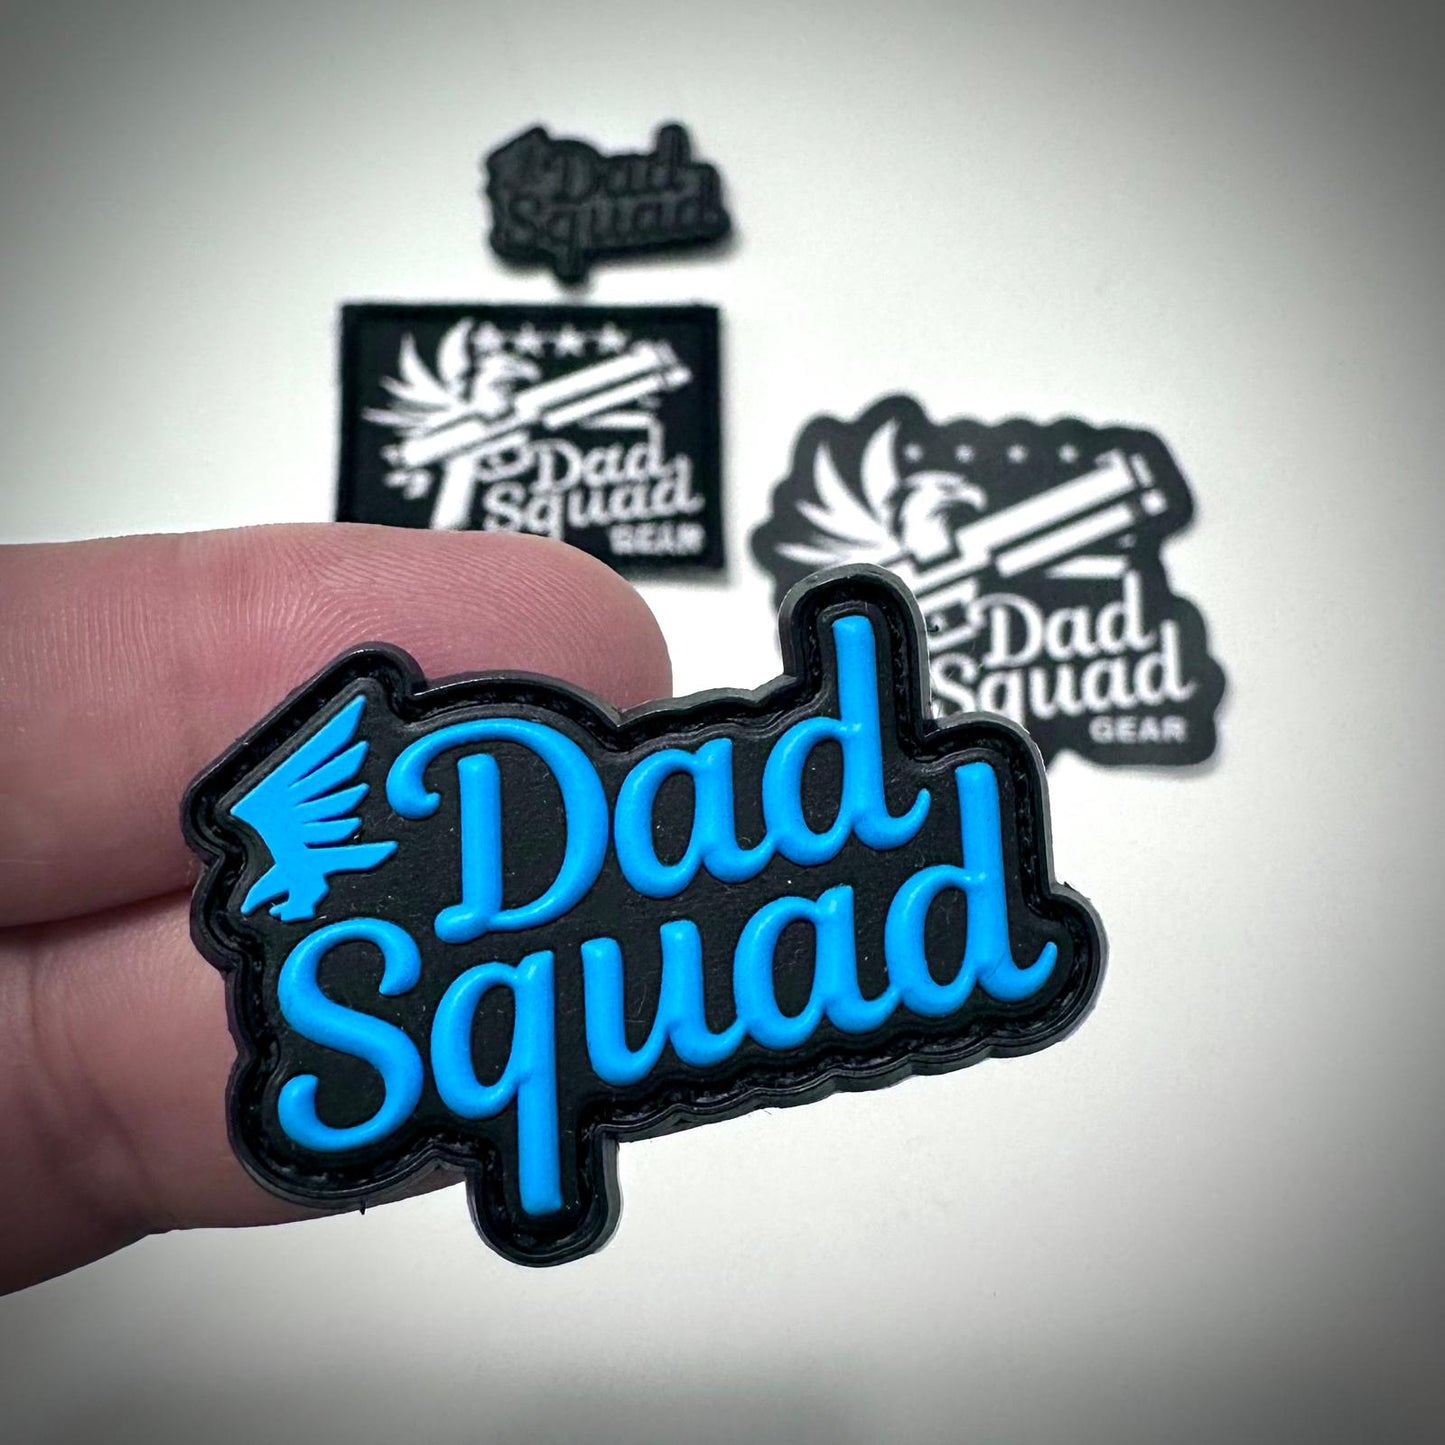 Dad Squad V2 Patch Set